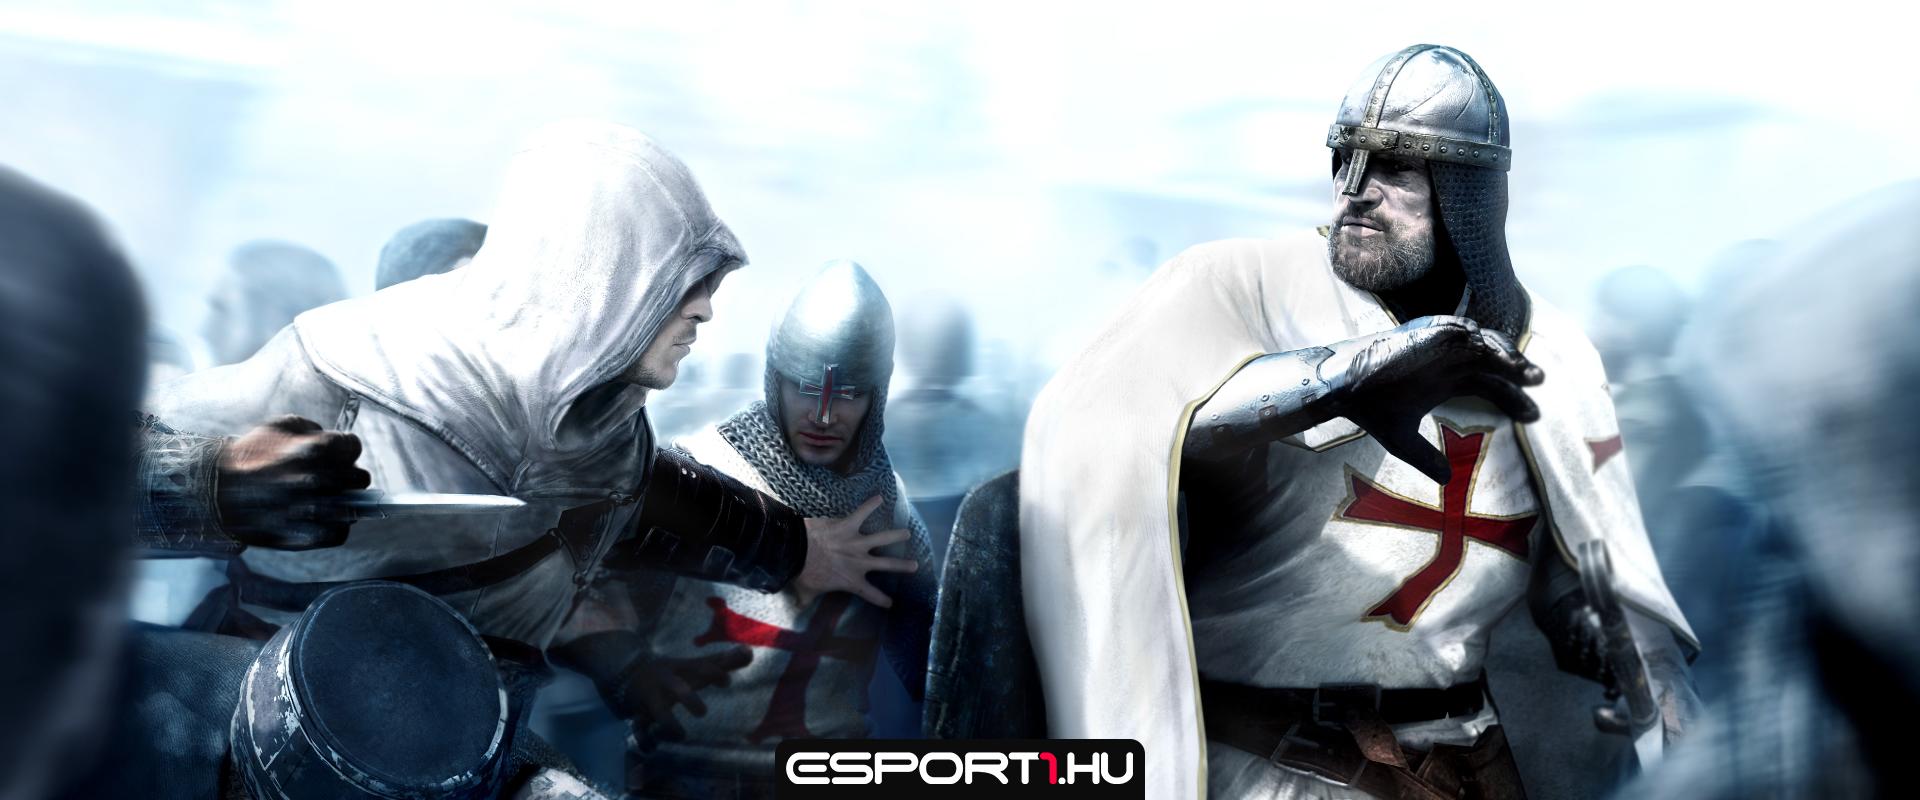 Érkezhet az Assassin's Creed remake-je